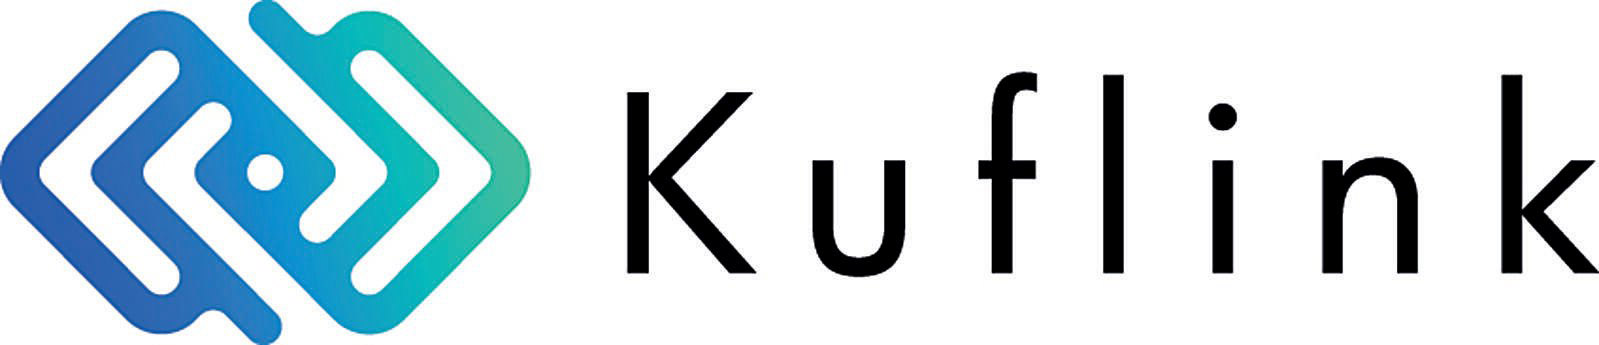 image of Kuflink logo.